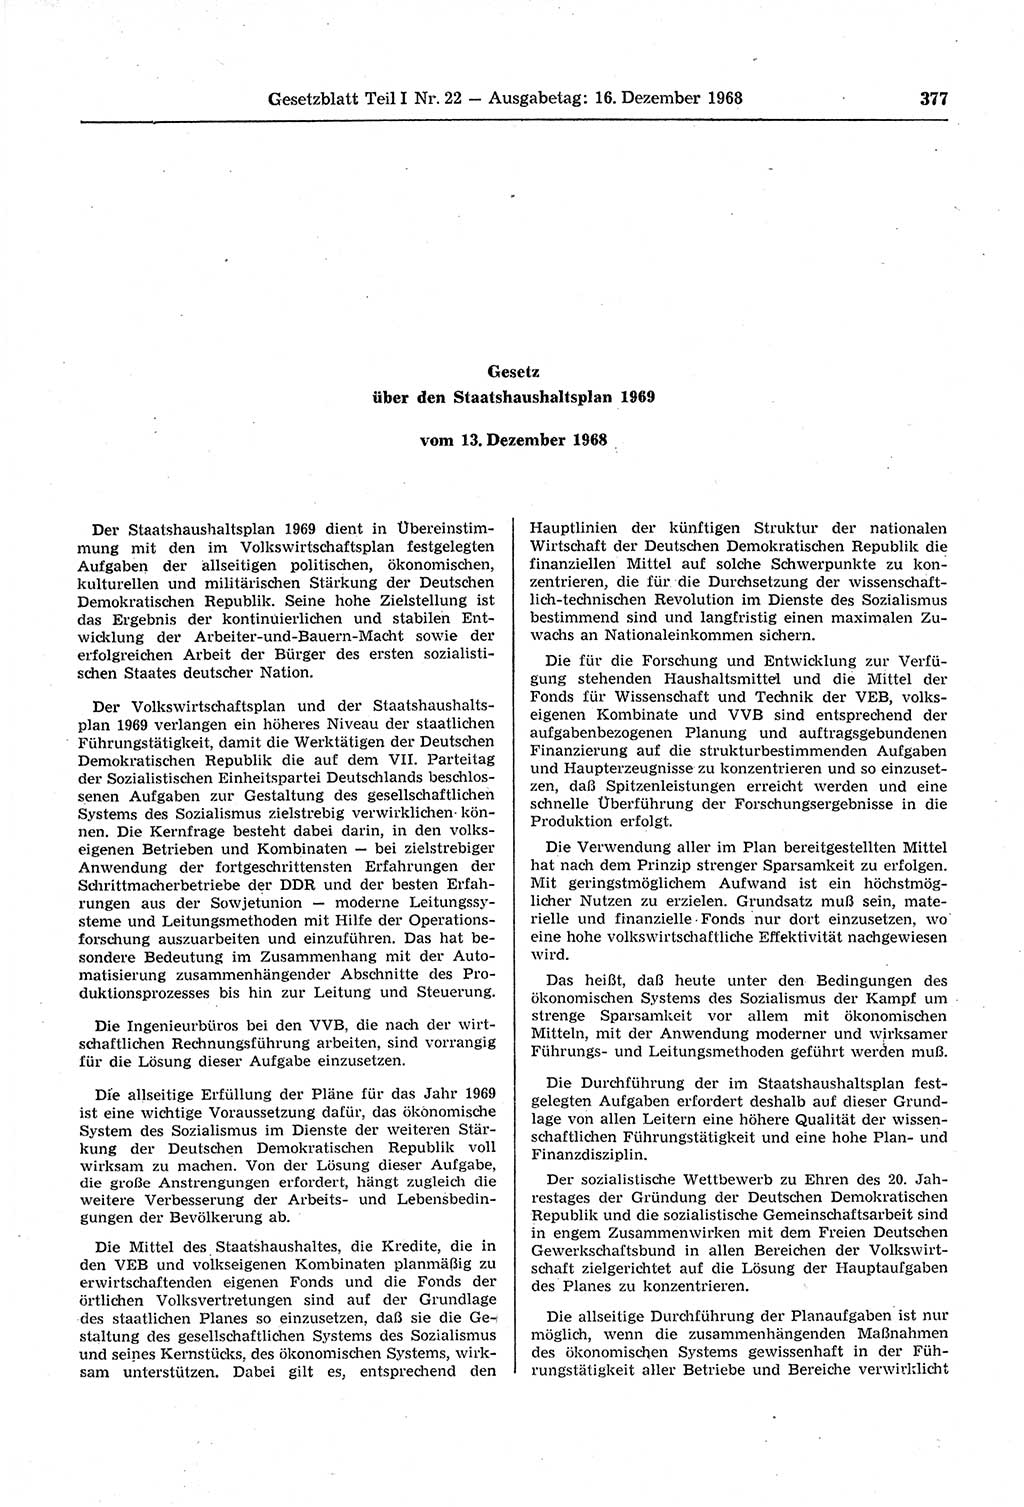 Gesetzblatt (GBl.) der Deutschen Demokratischen Republik (DDR) Teil Ⅰ 1968, Seite 377 (GBl. DDR Ⅰ 1968, S. 377)